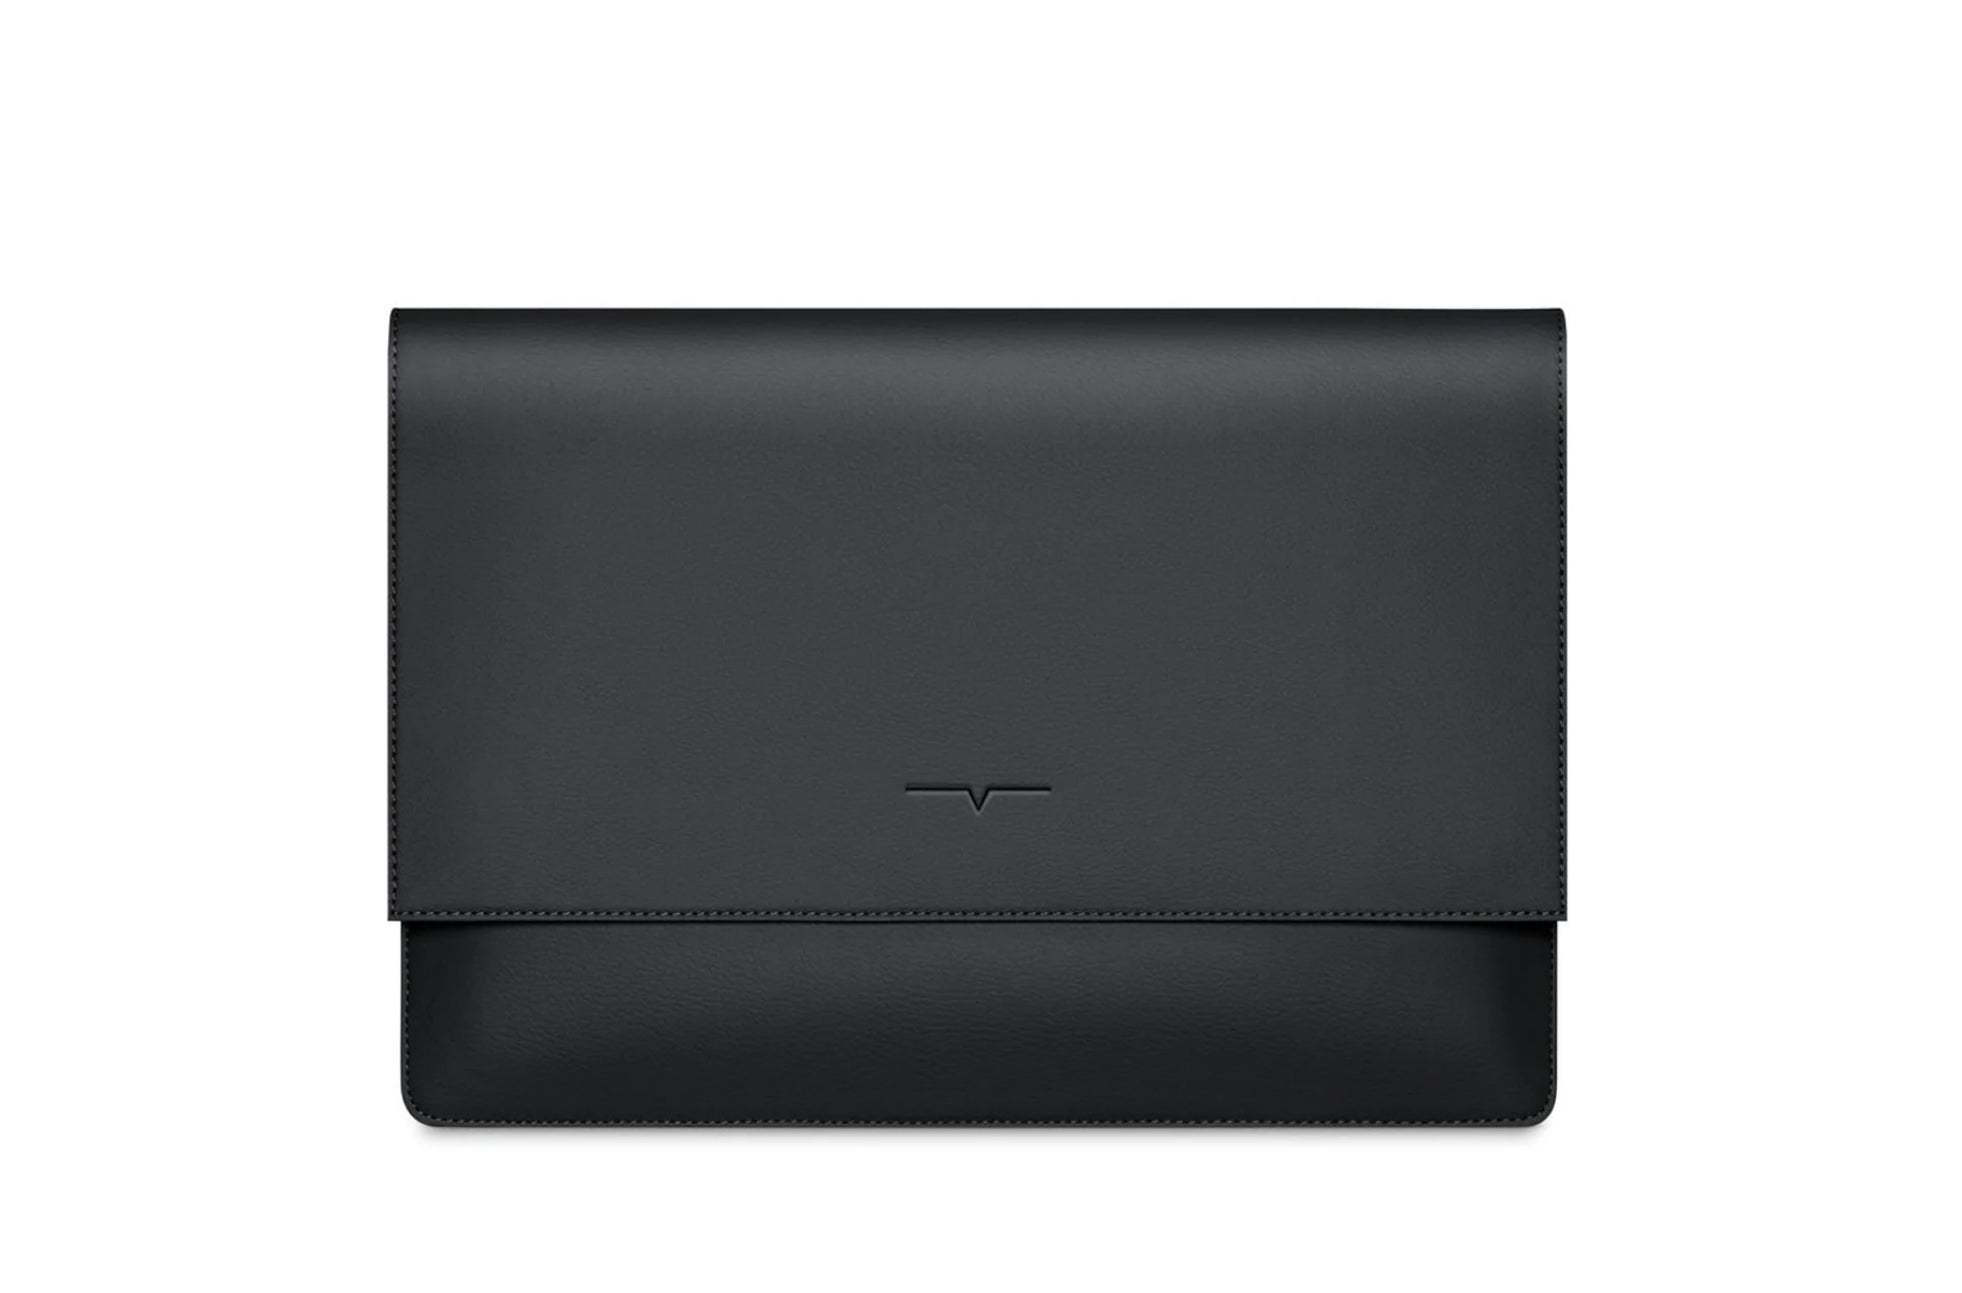 Personalized Black Leather Designer iPad Case Portfolio